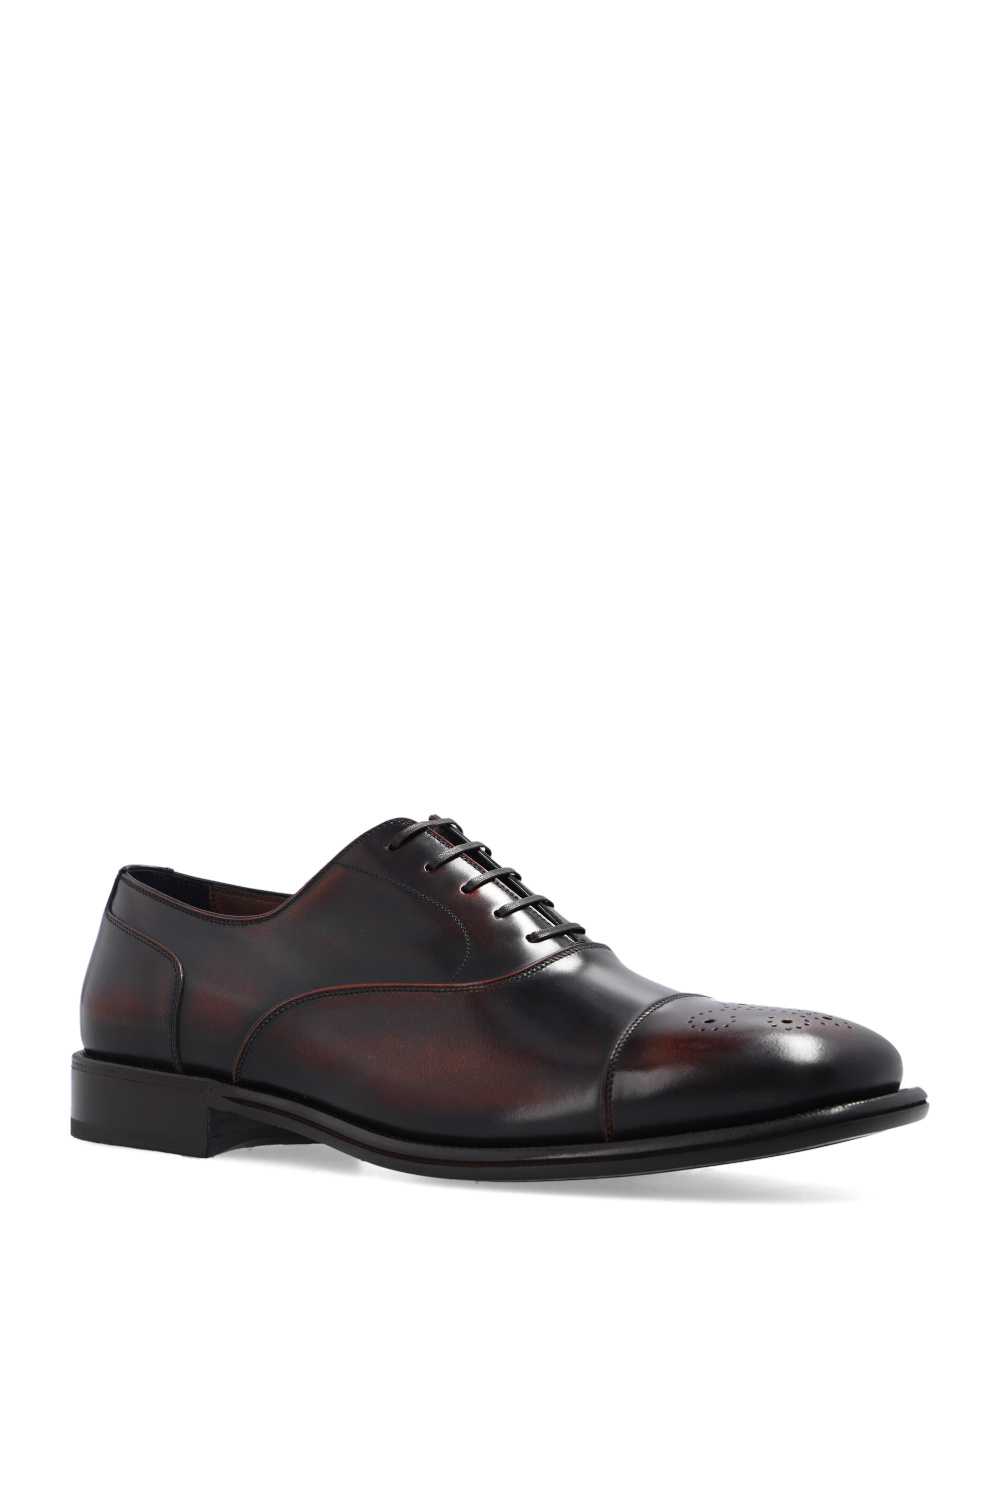 Salvatore Ferragamo ‘Maxime’ Oxford shoes